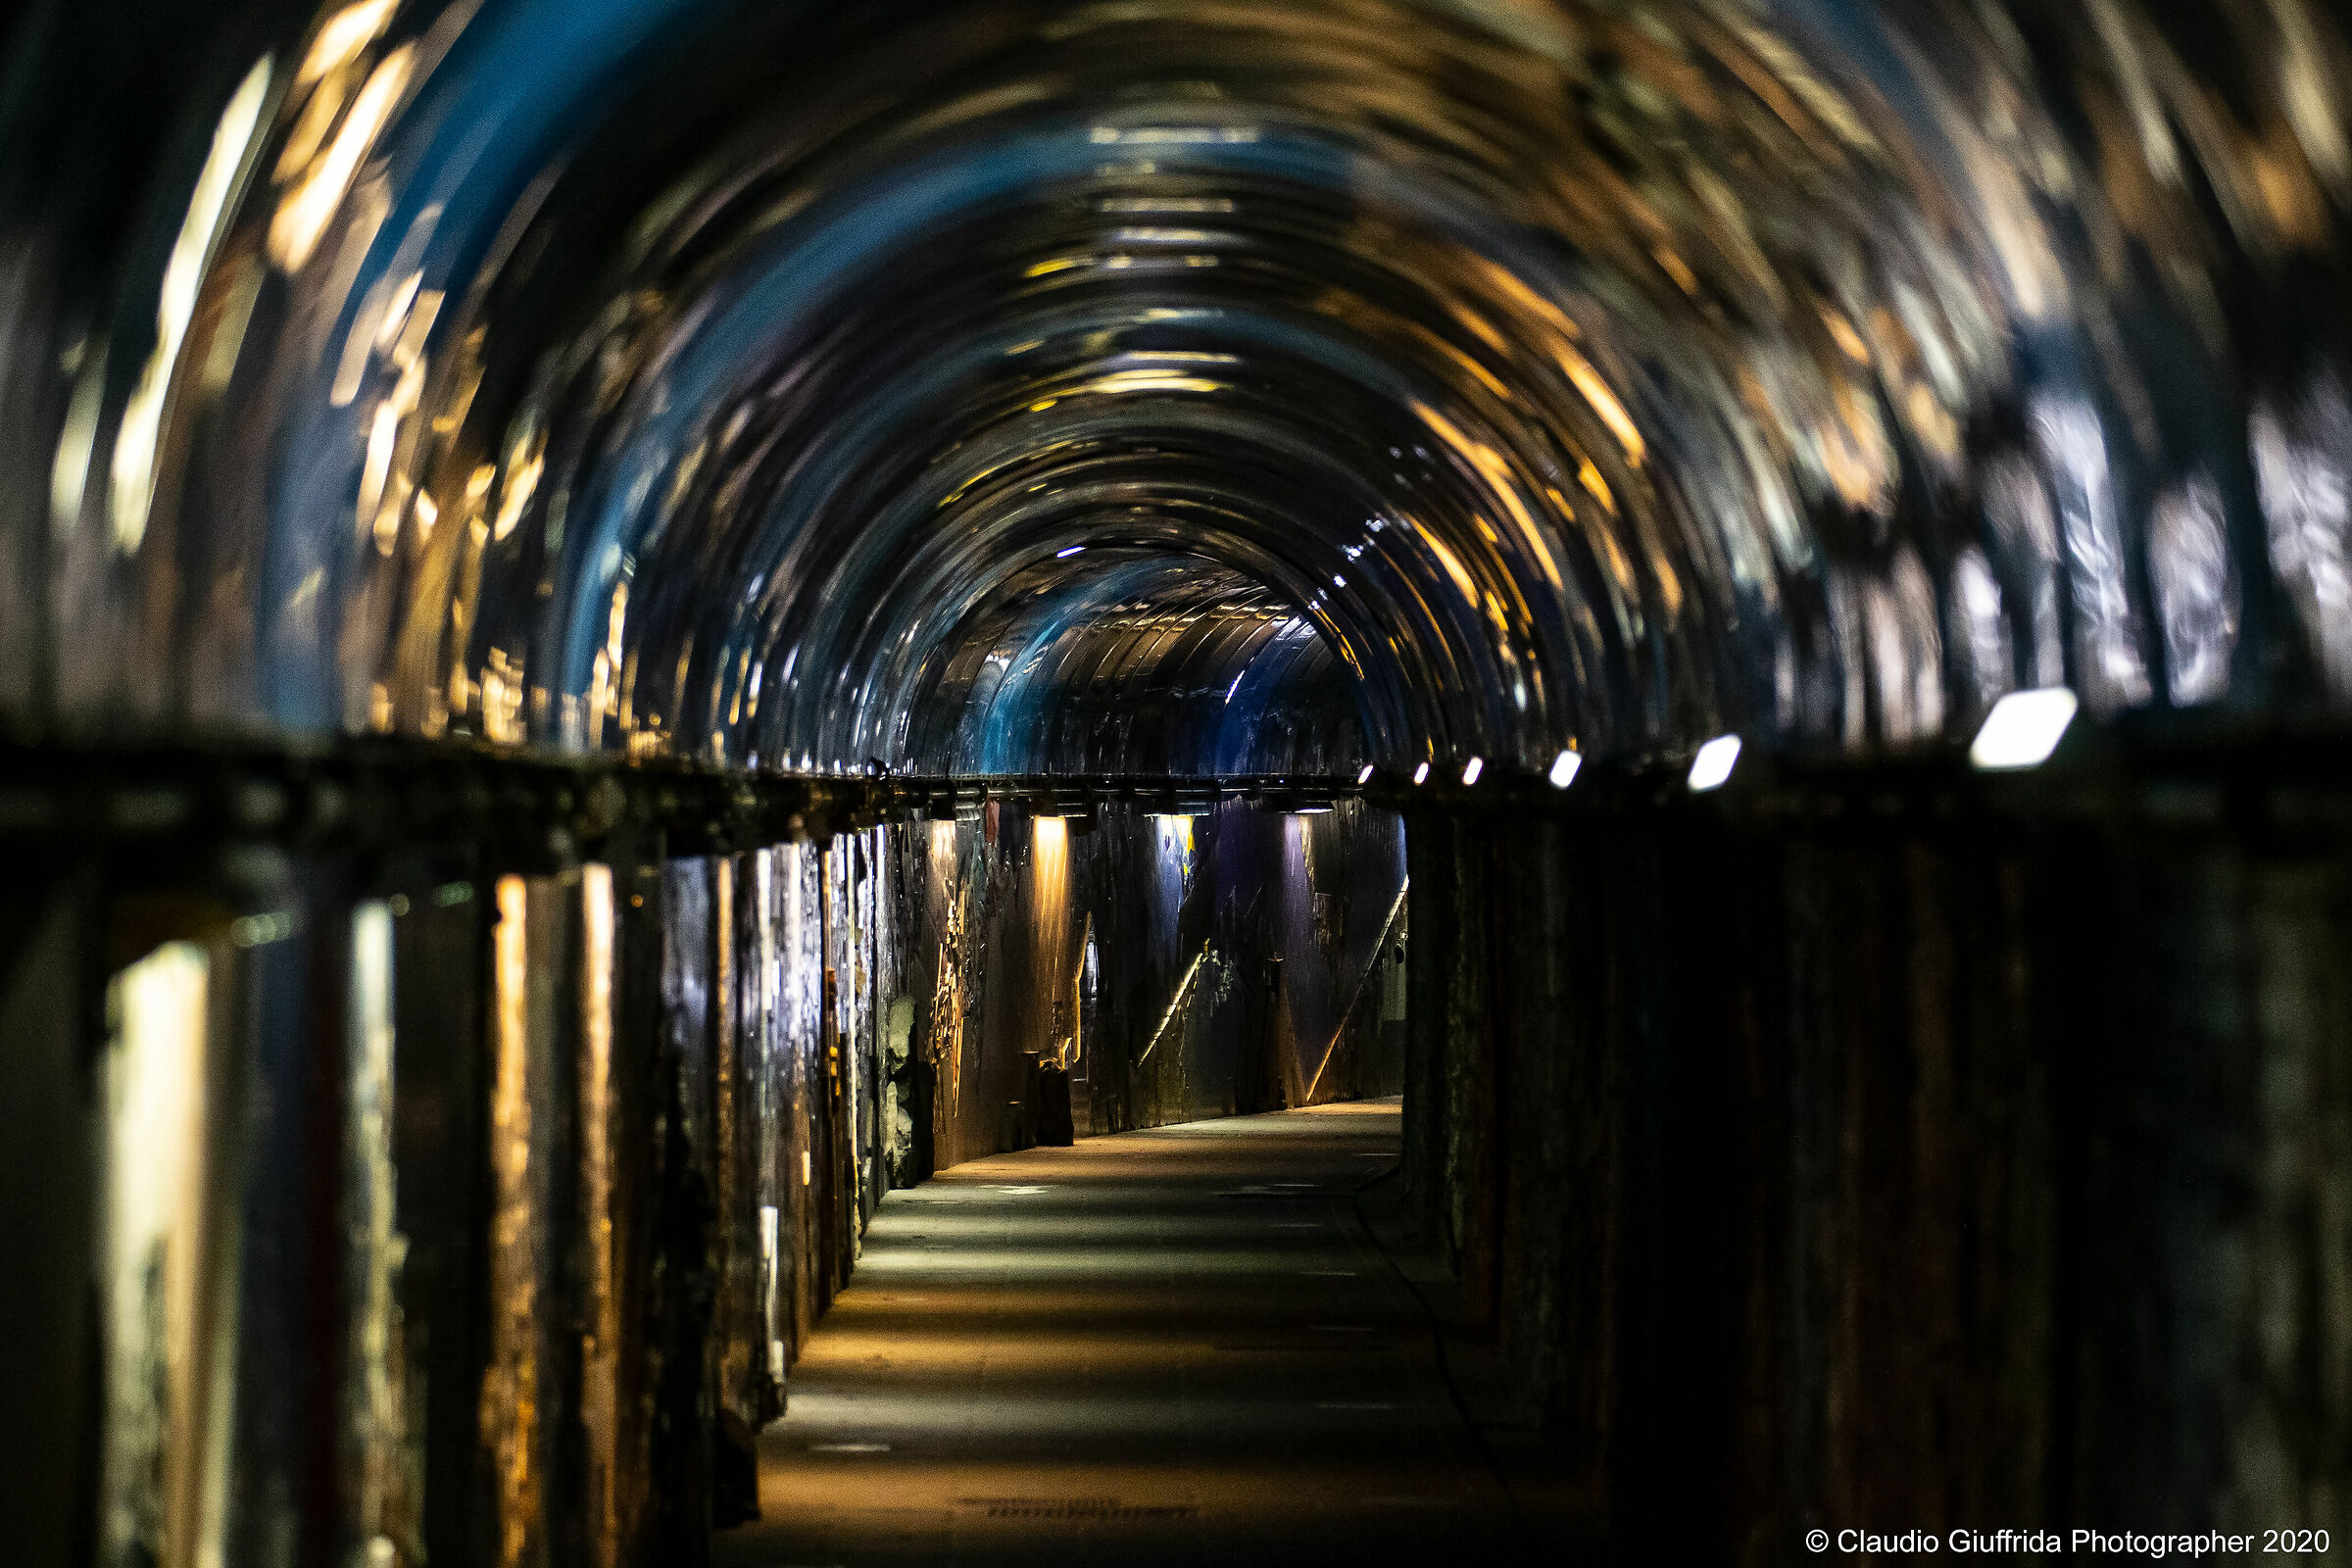 The Riomaggiore Tunnel...